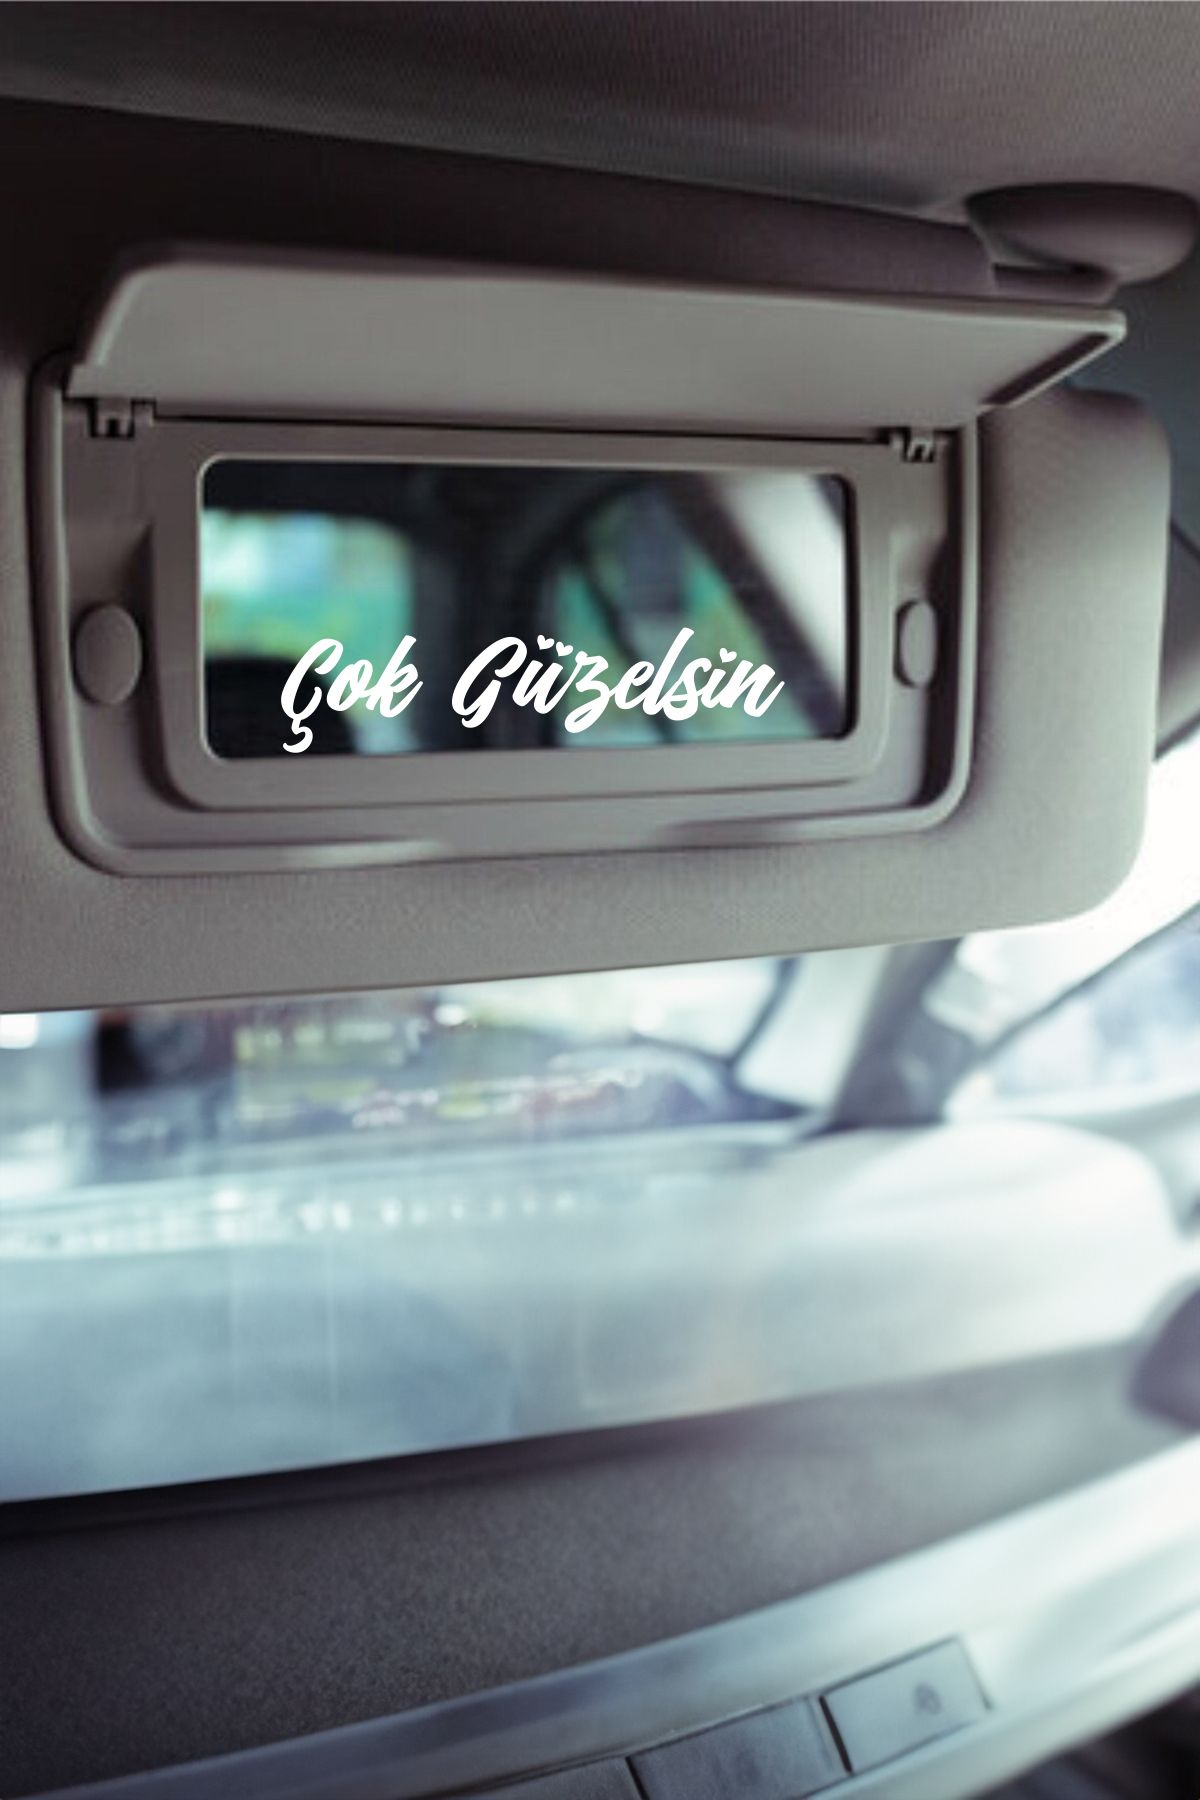 Turuncu Çok Güzelsin Araba Güneşlik Ayna Yazısı -Etiket Sticker 8x2cm